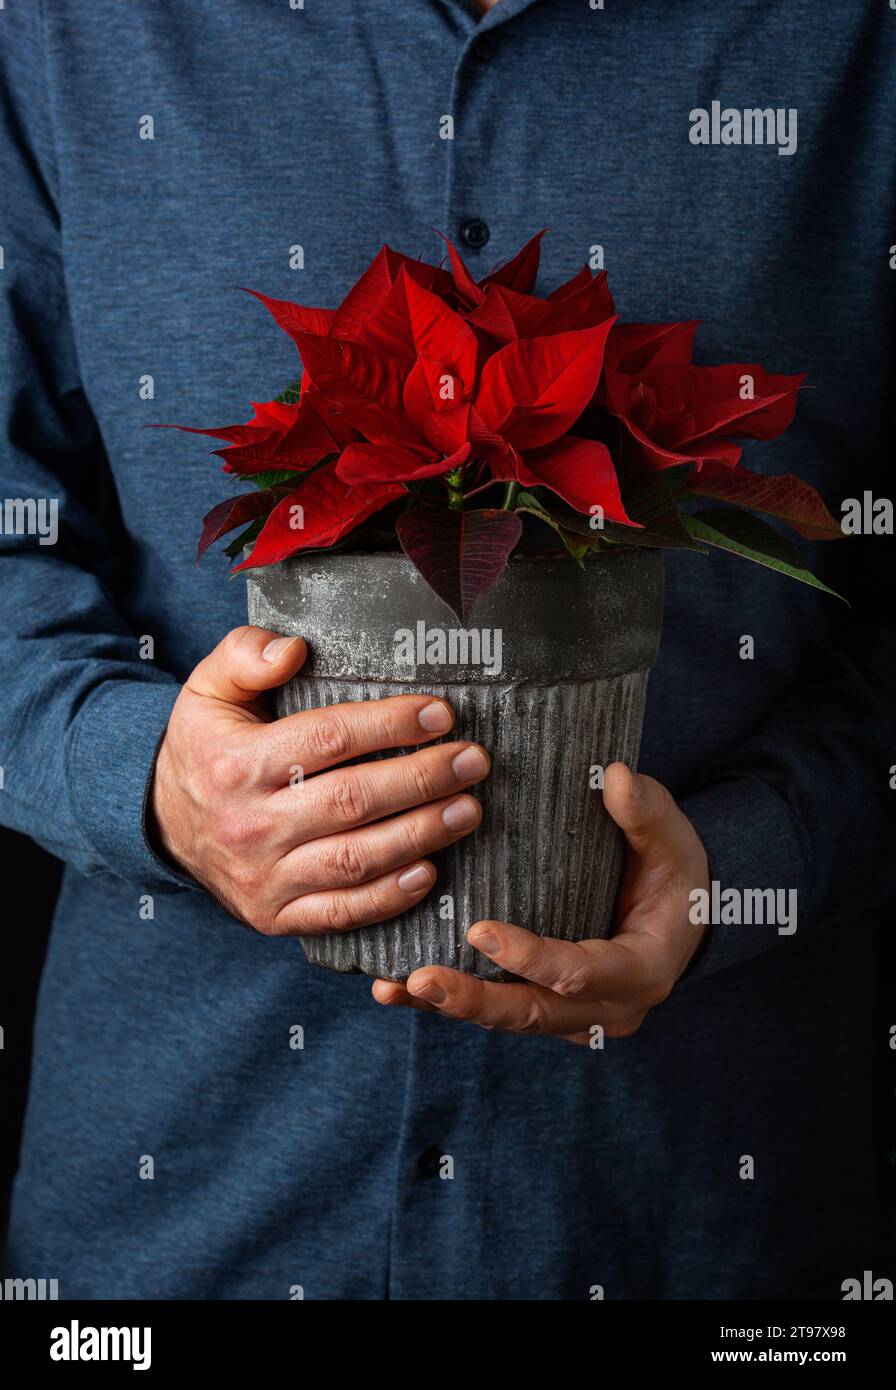 man gardener holding winter flowers poinsettia on black background Stock Photo